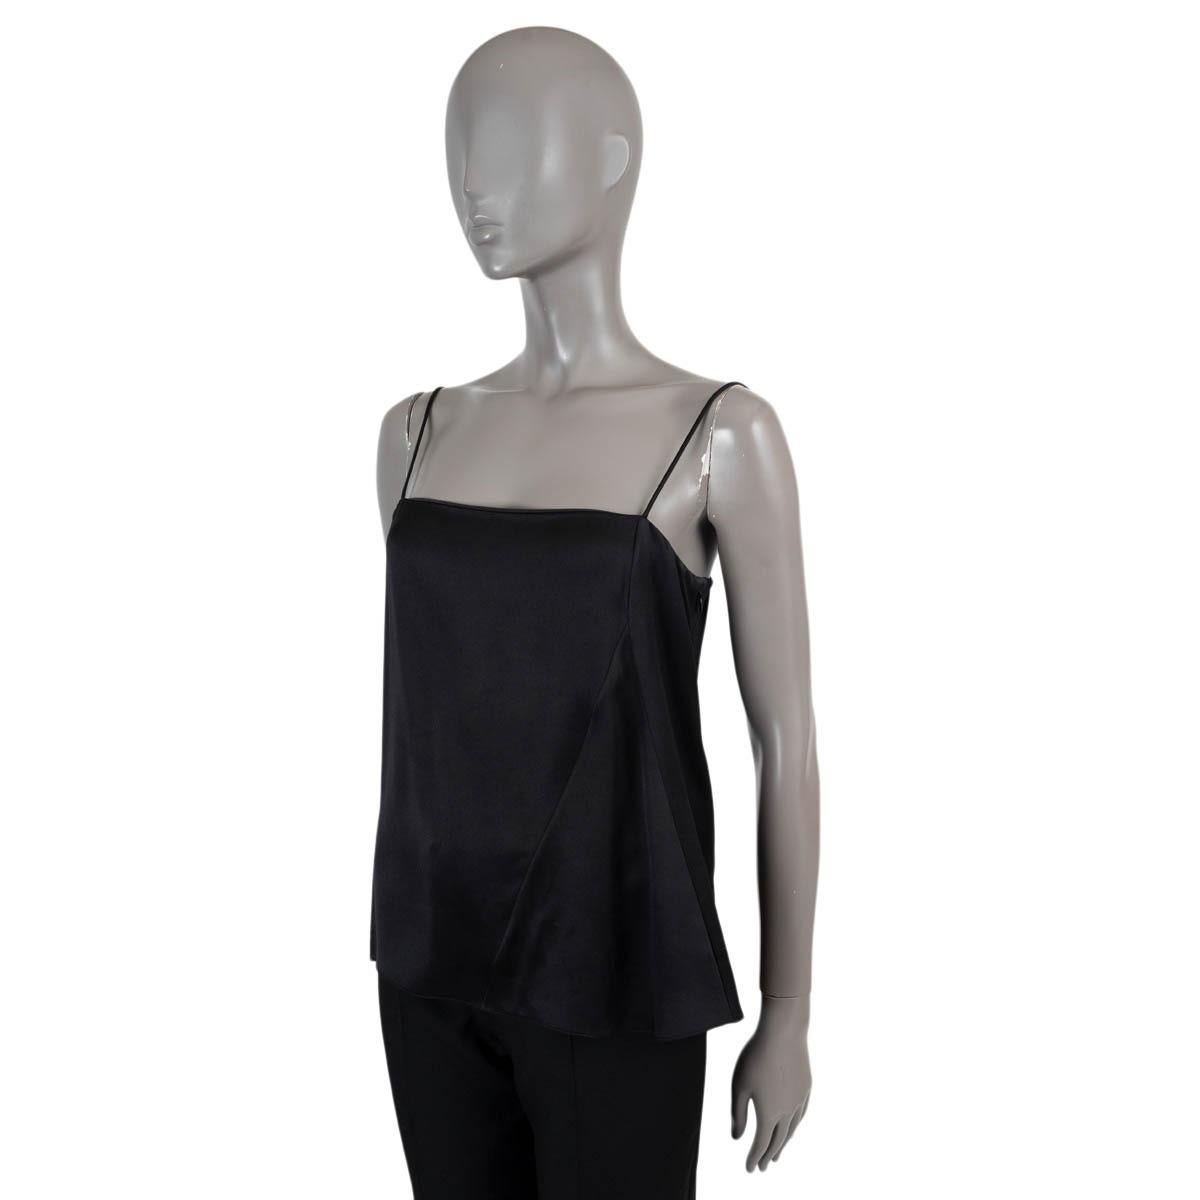 100% authentique Christian Dior camisole en soie noire (100%). S'ouvre par une fermeture à glissière sur le côté. A été porté et est en excellent état.

Mesures
Modèle	4A21529A1616
Taille de l'étiquette	38
Taille	S
Buste de	84cm (32.8in)
Taille